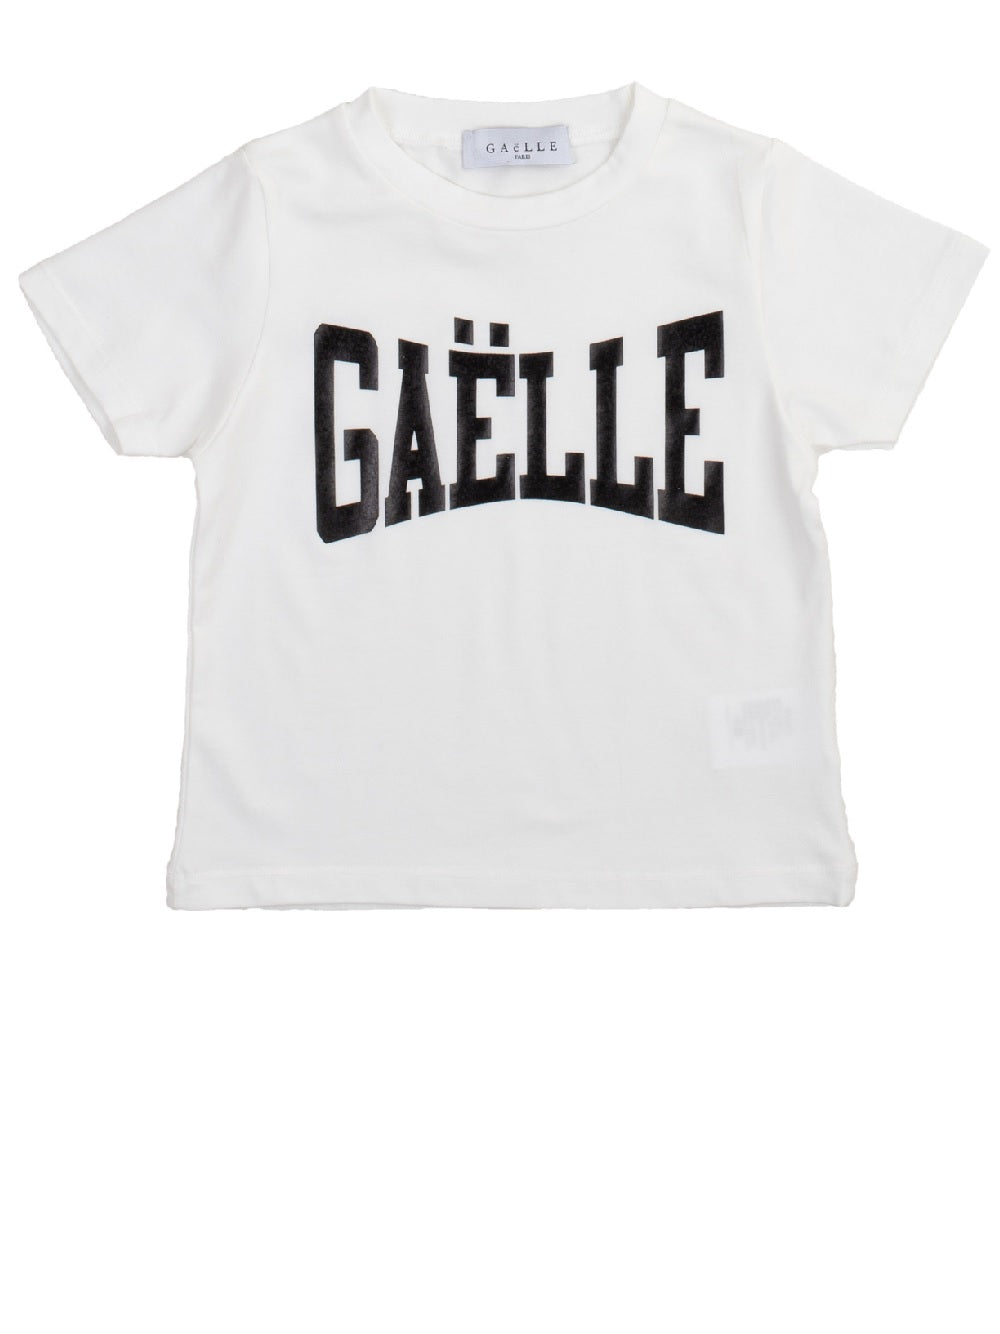 T-shirt Gaëlle modello 7051T0211 con logo stampato in vinile